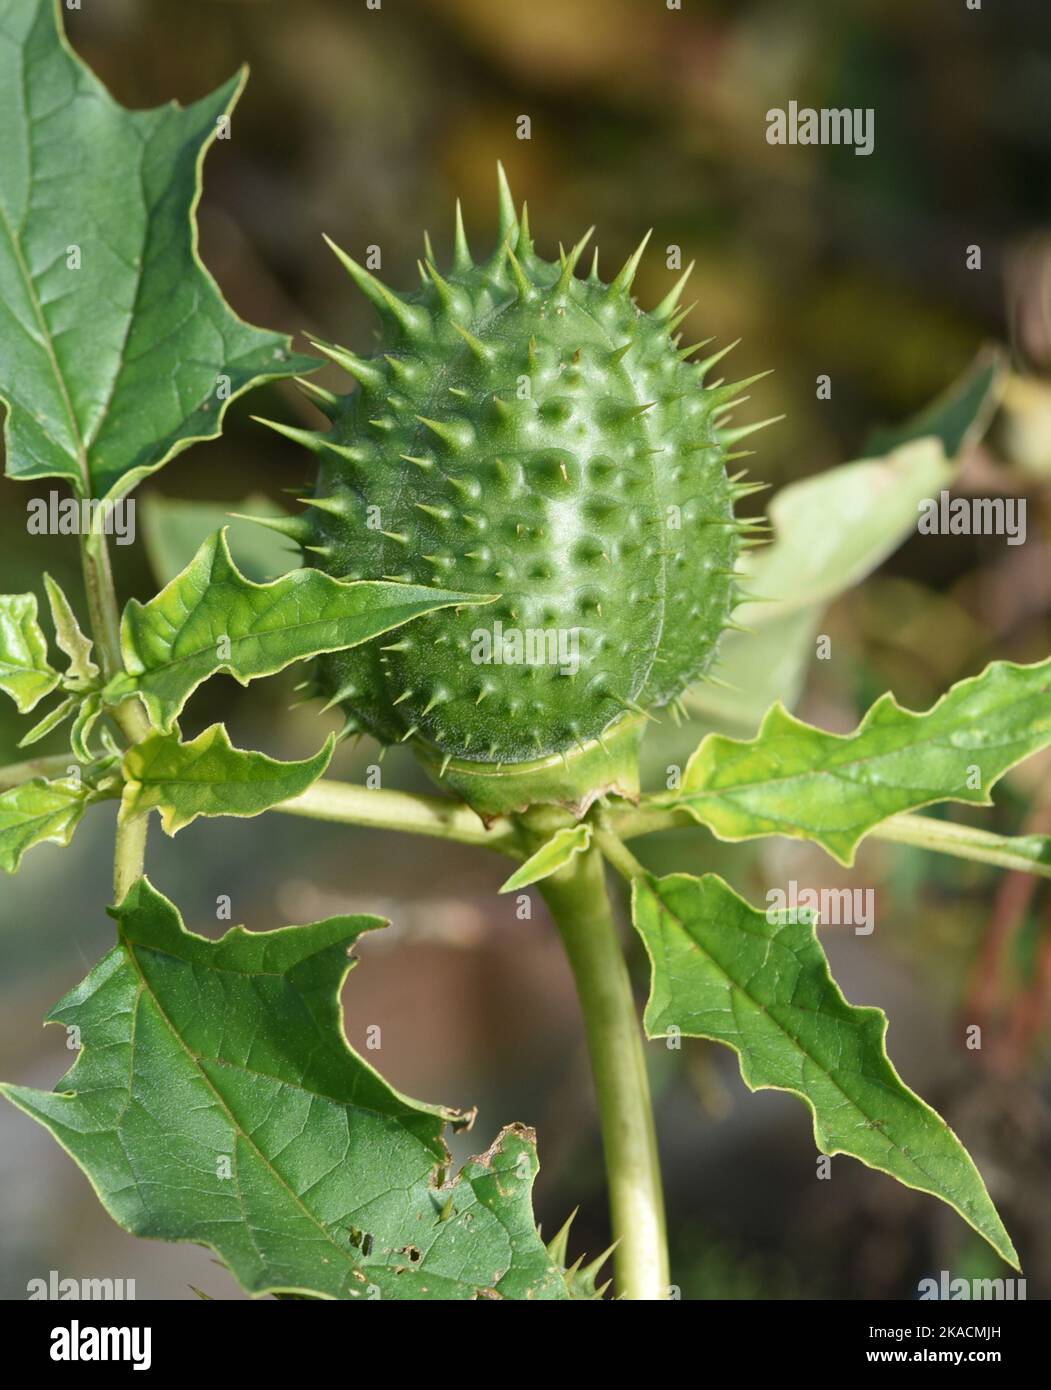 Stechapfel, Datura stramonium ist eine Heilpflanze die auch in der Medizin eingesetzt wird. Manzana de espina, Datura stramonium es una planta medicinal que yo Foto de stock